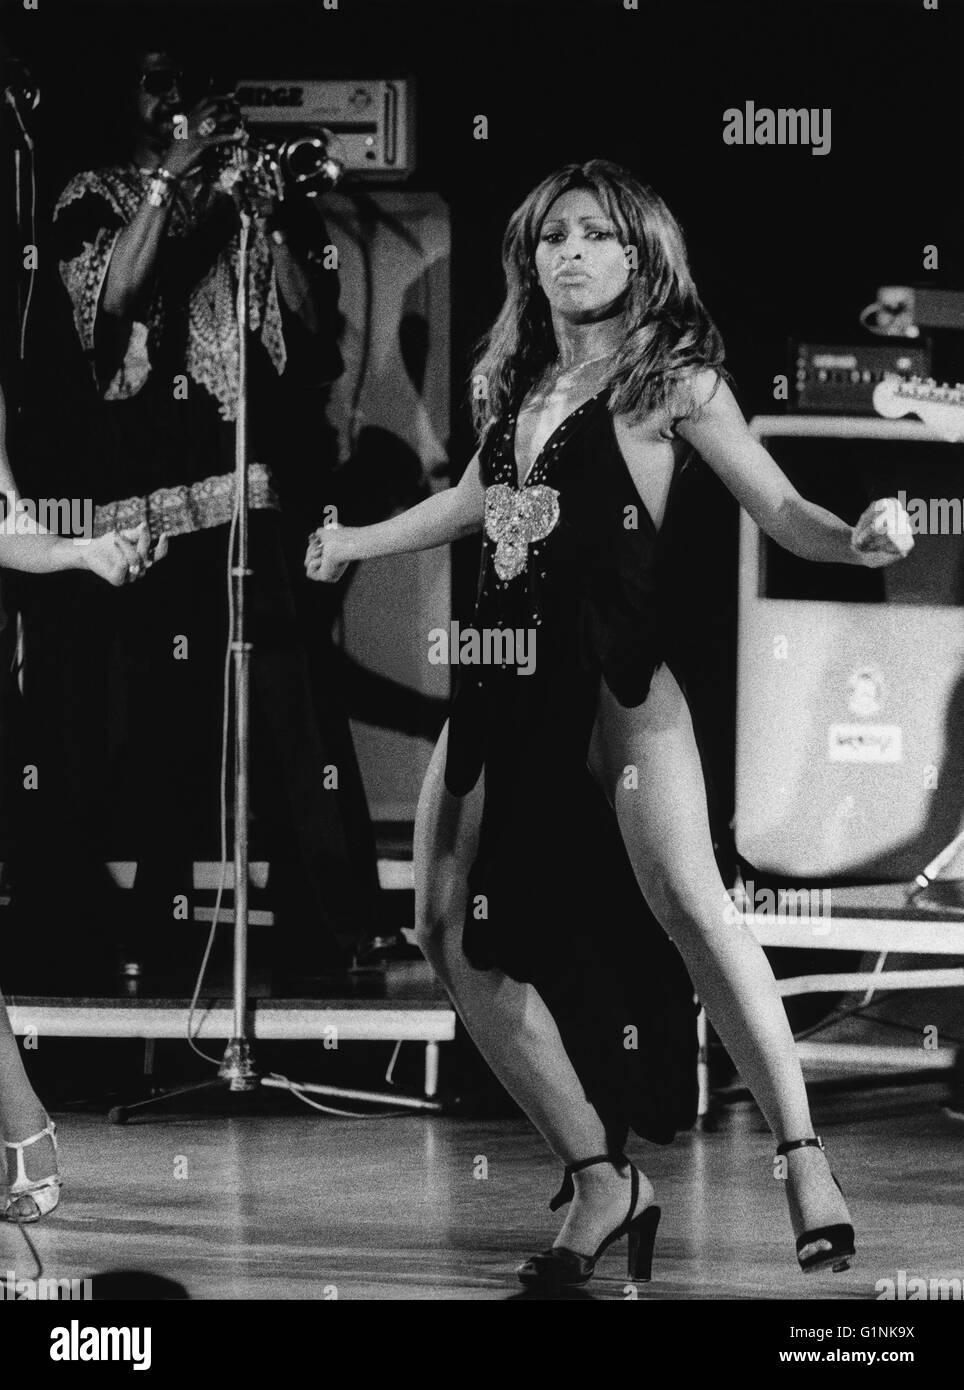 Tina Turner l'artiste américain sur scène Banque D'Images